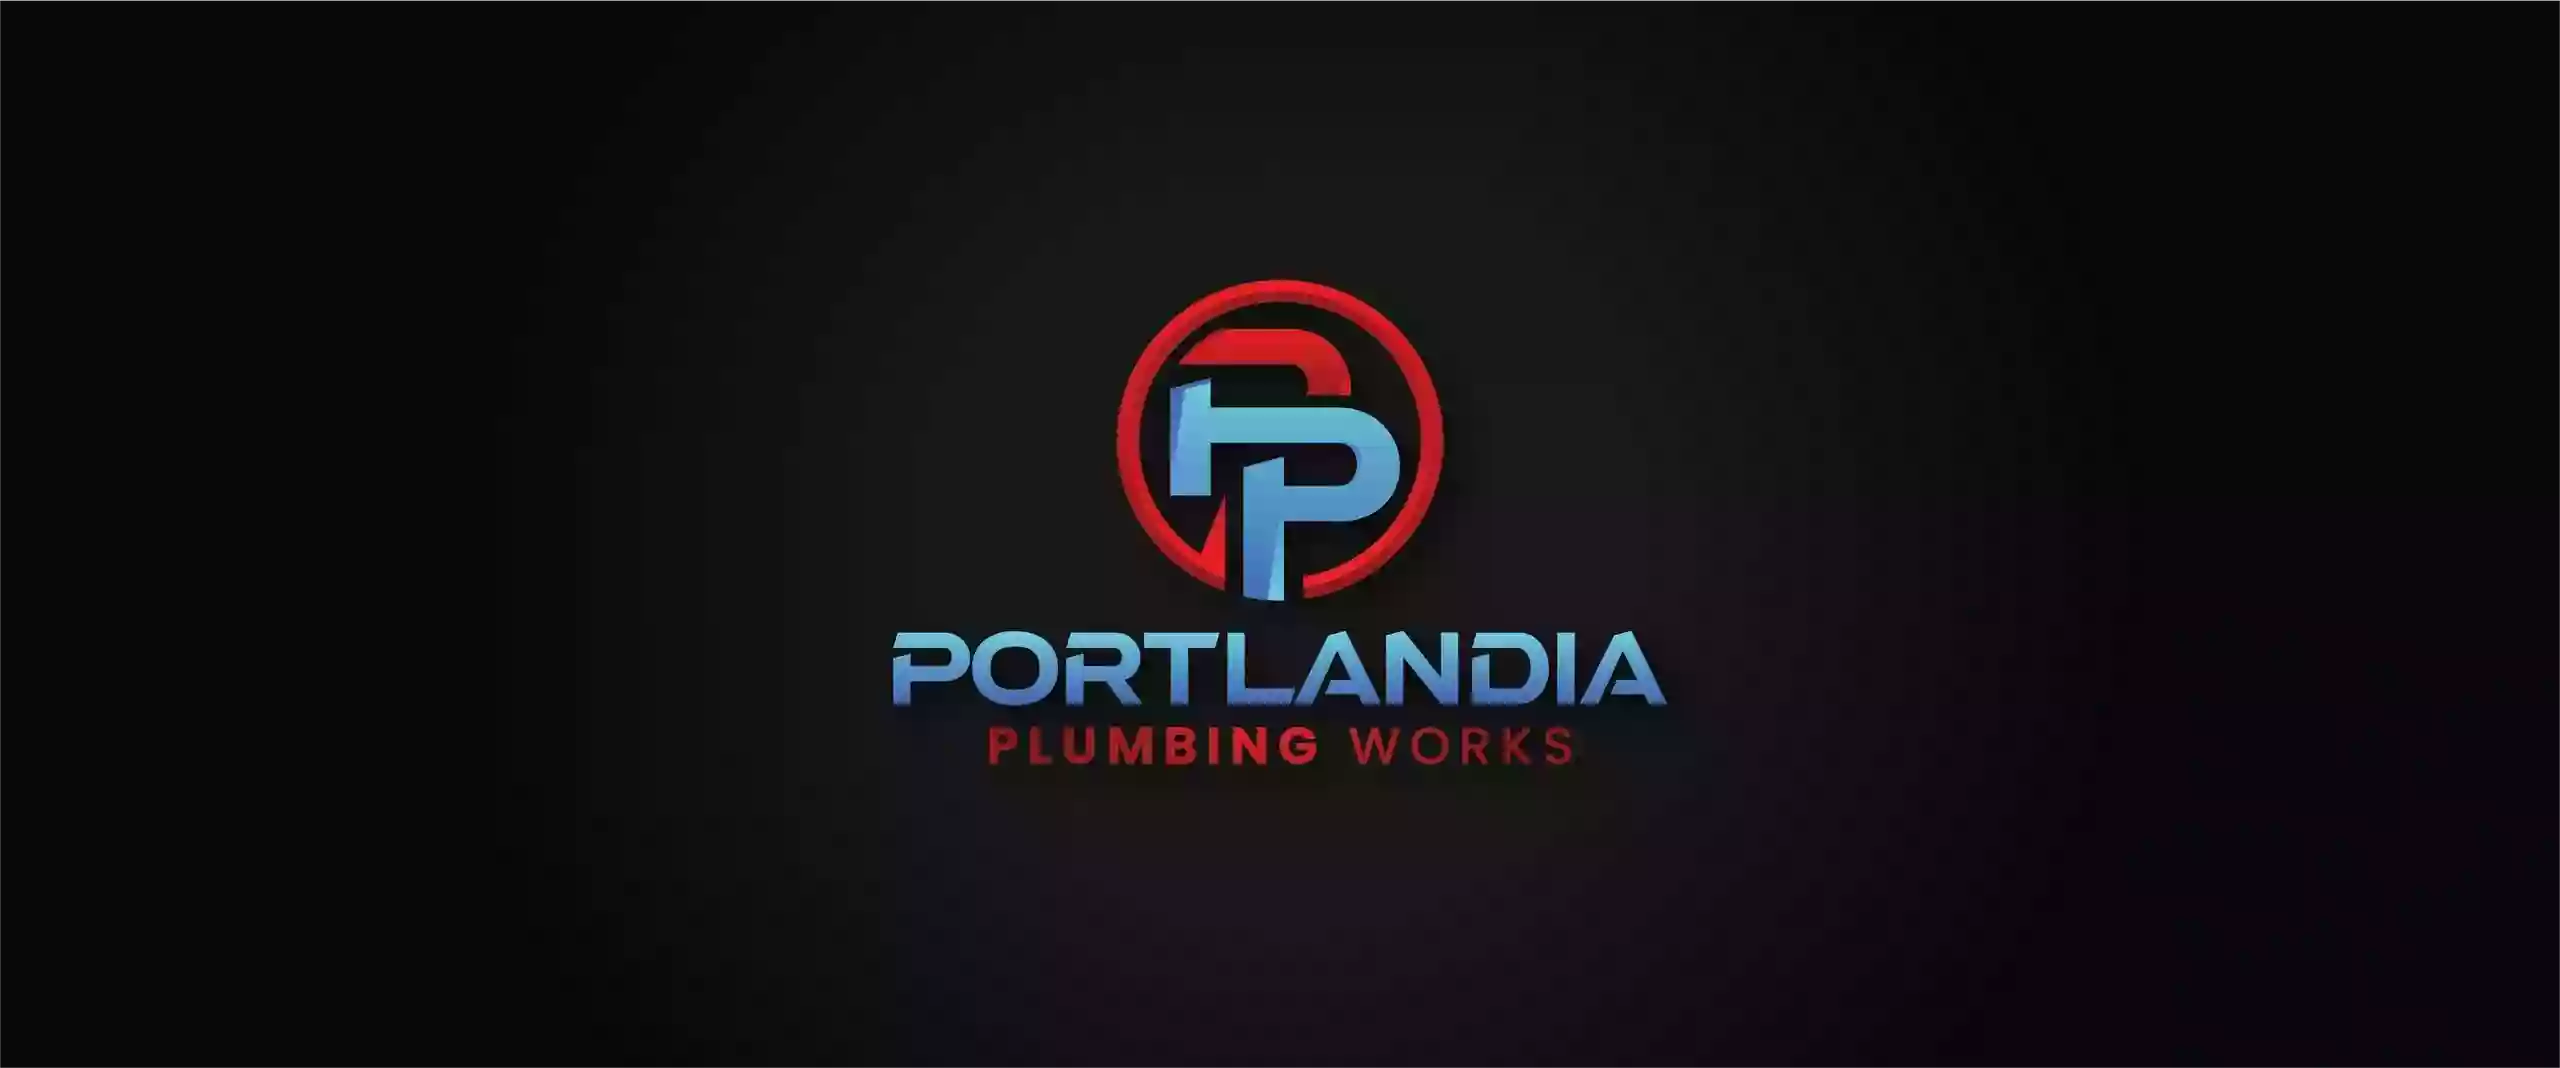 Portlandia Plumbing Works, LLC